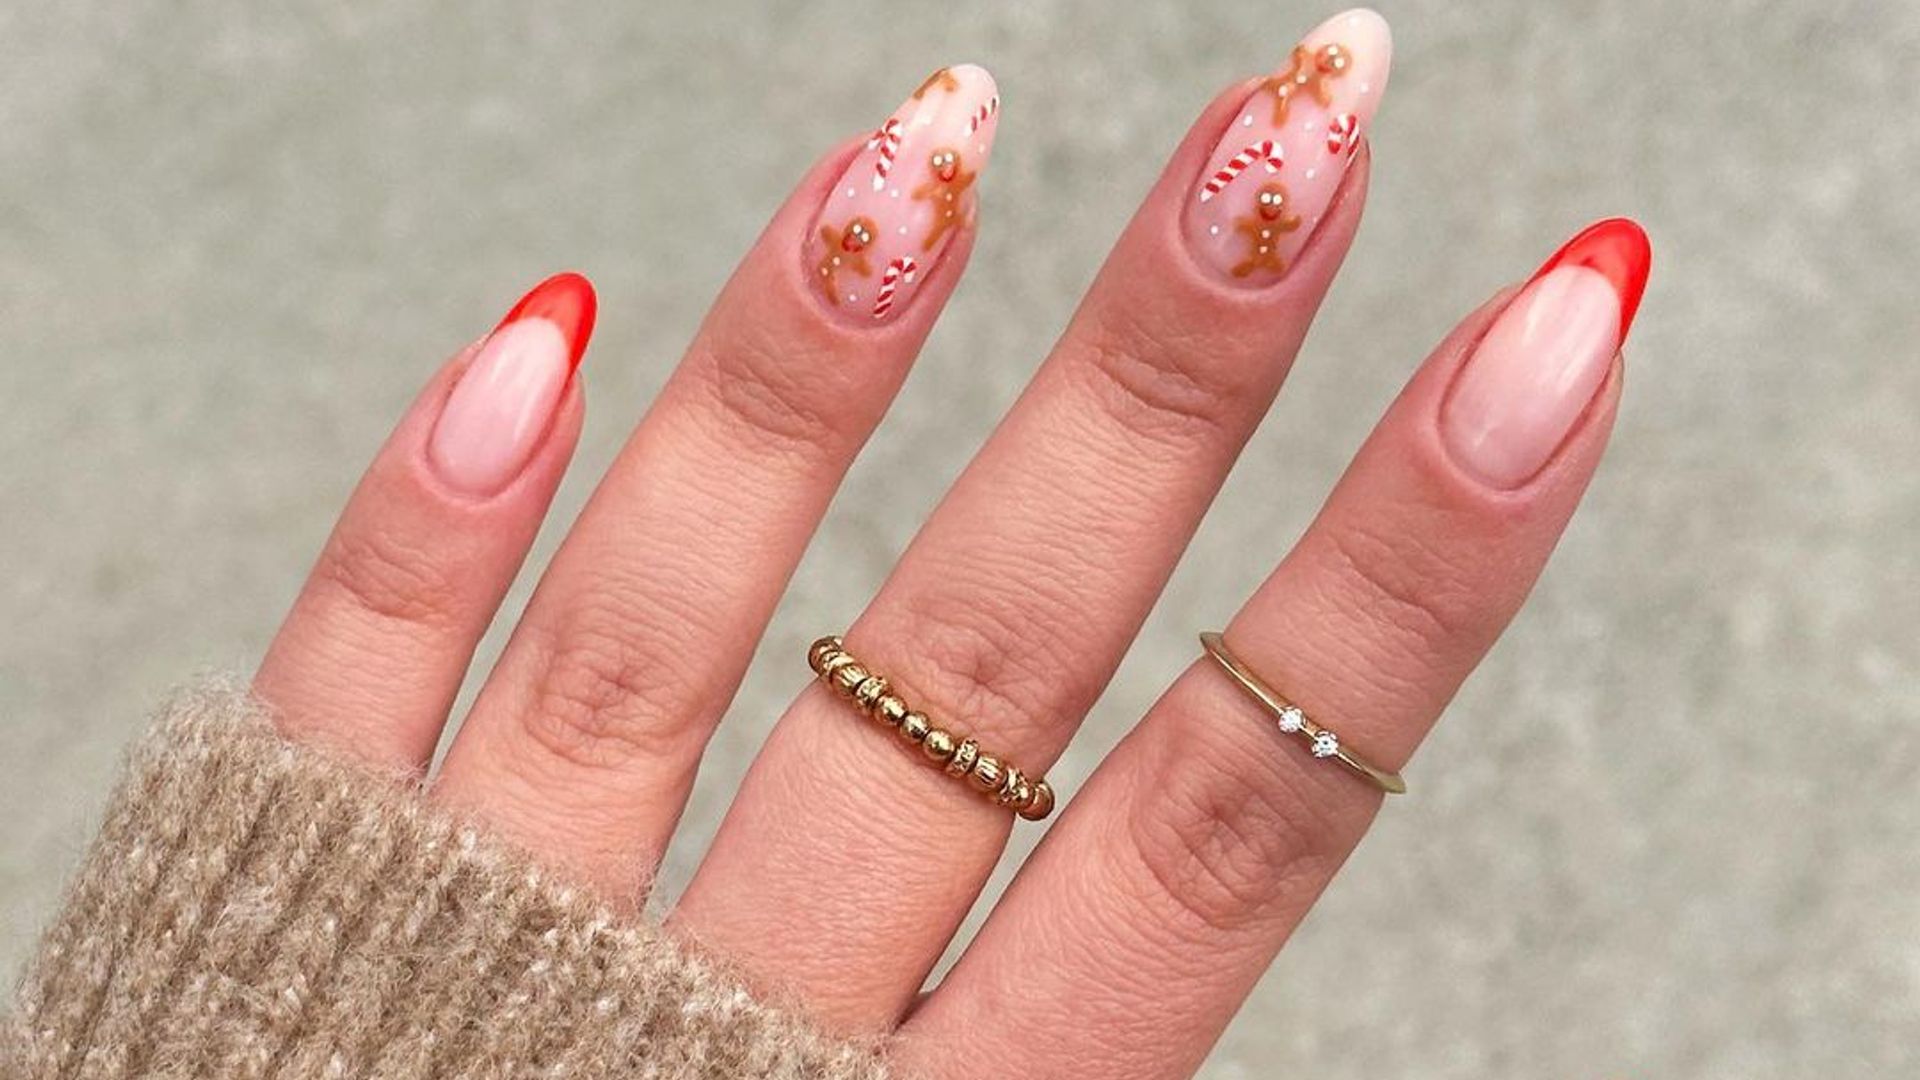 jun | Nail polish combinations, Fall nail art designs, Dots nails